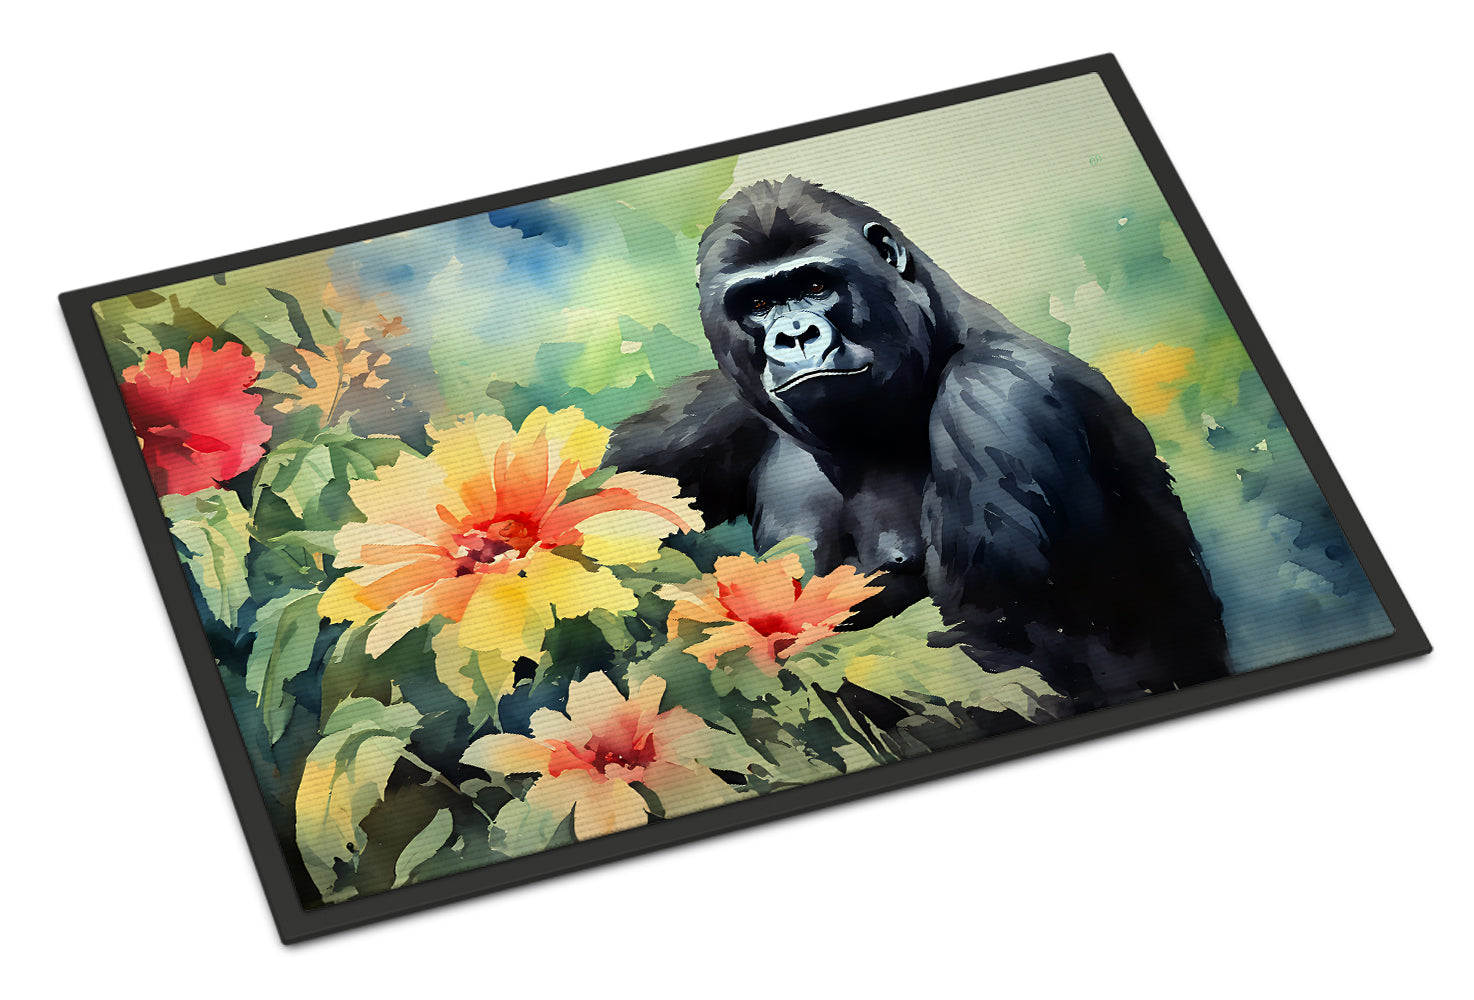 Buy this Gorilla Doormat